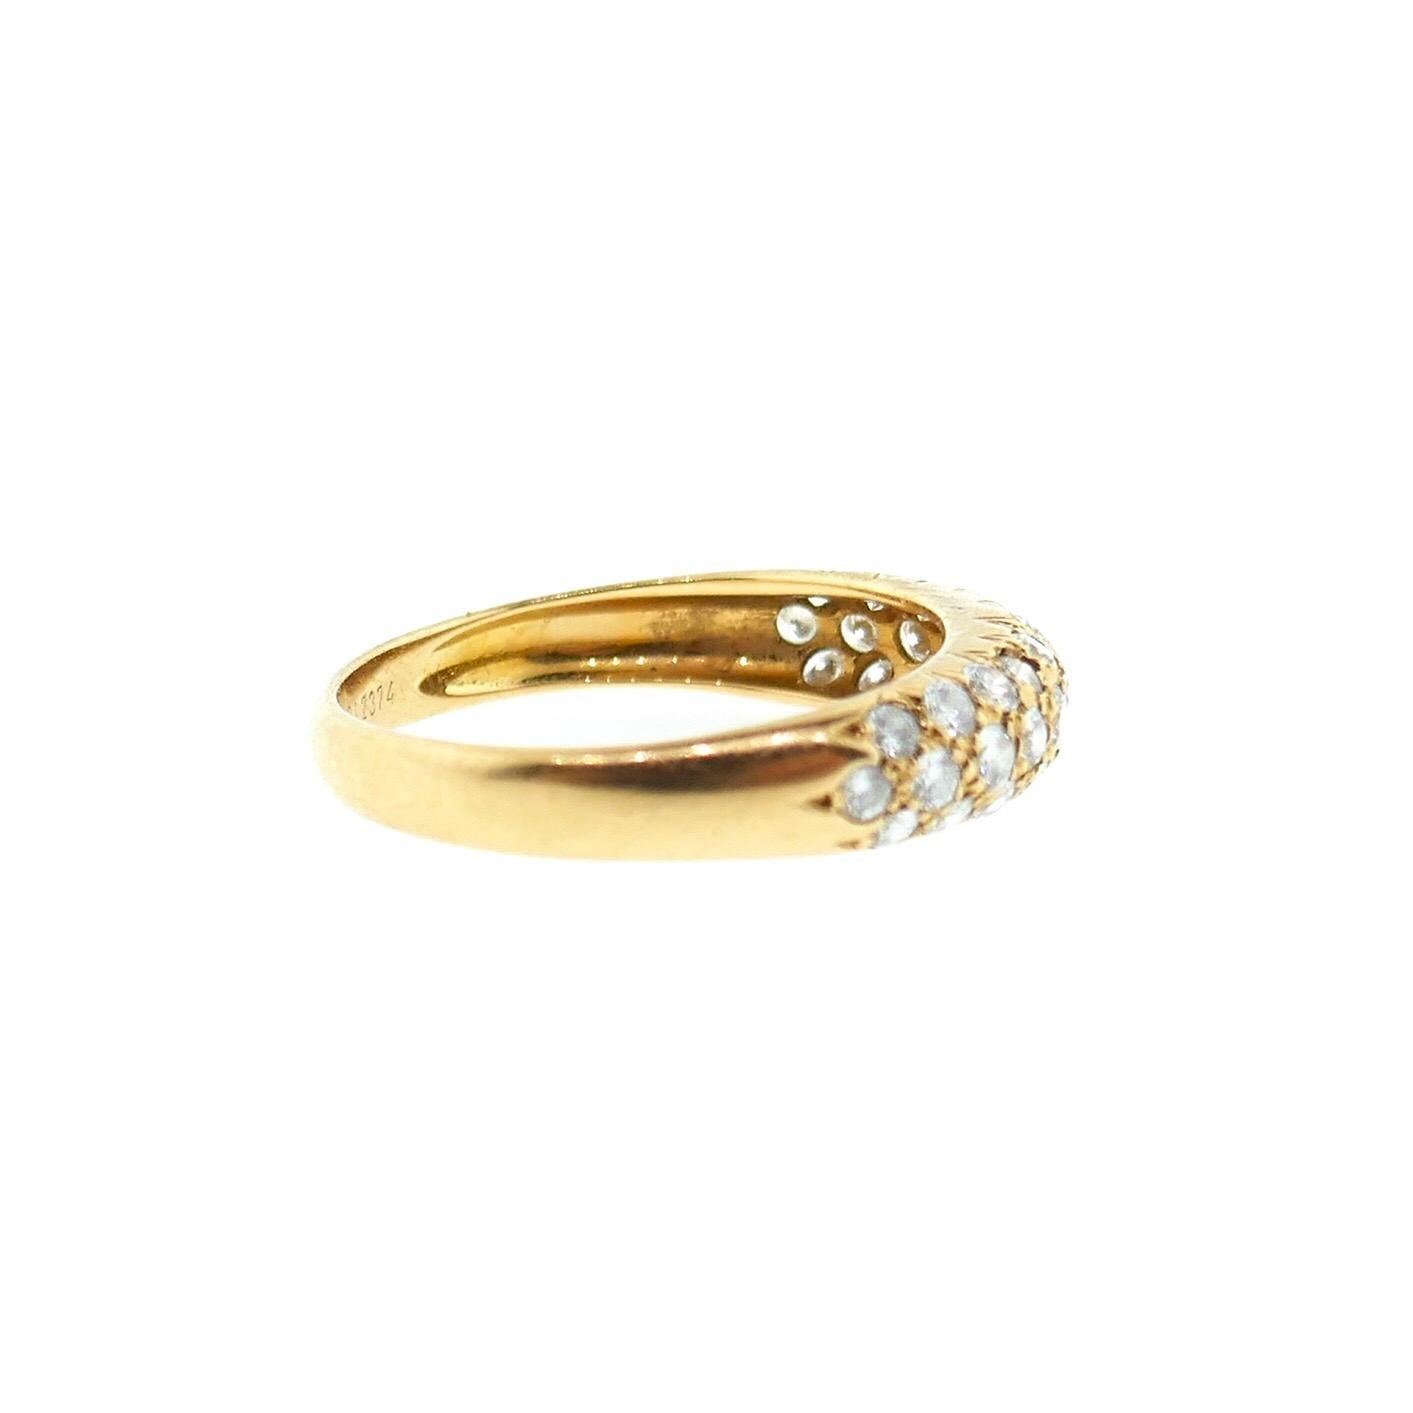 Women's Van Cleef & Arpels 18 Karat Yellow Gold Pave Diamond Band Ring